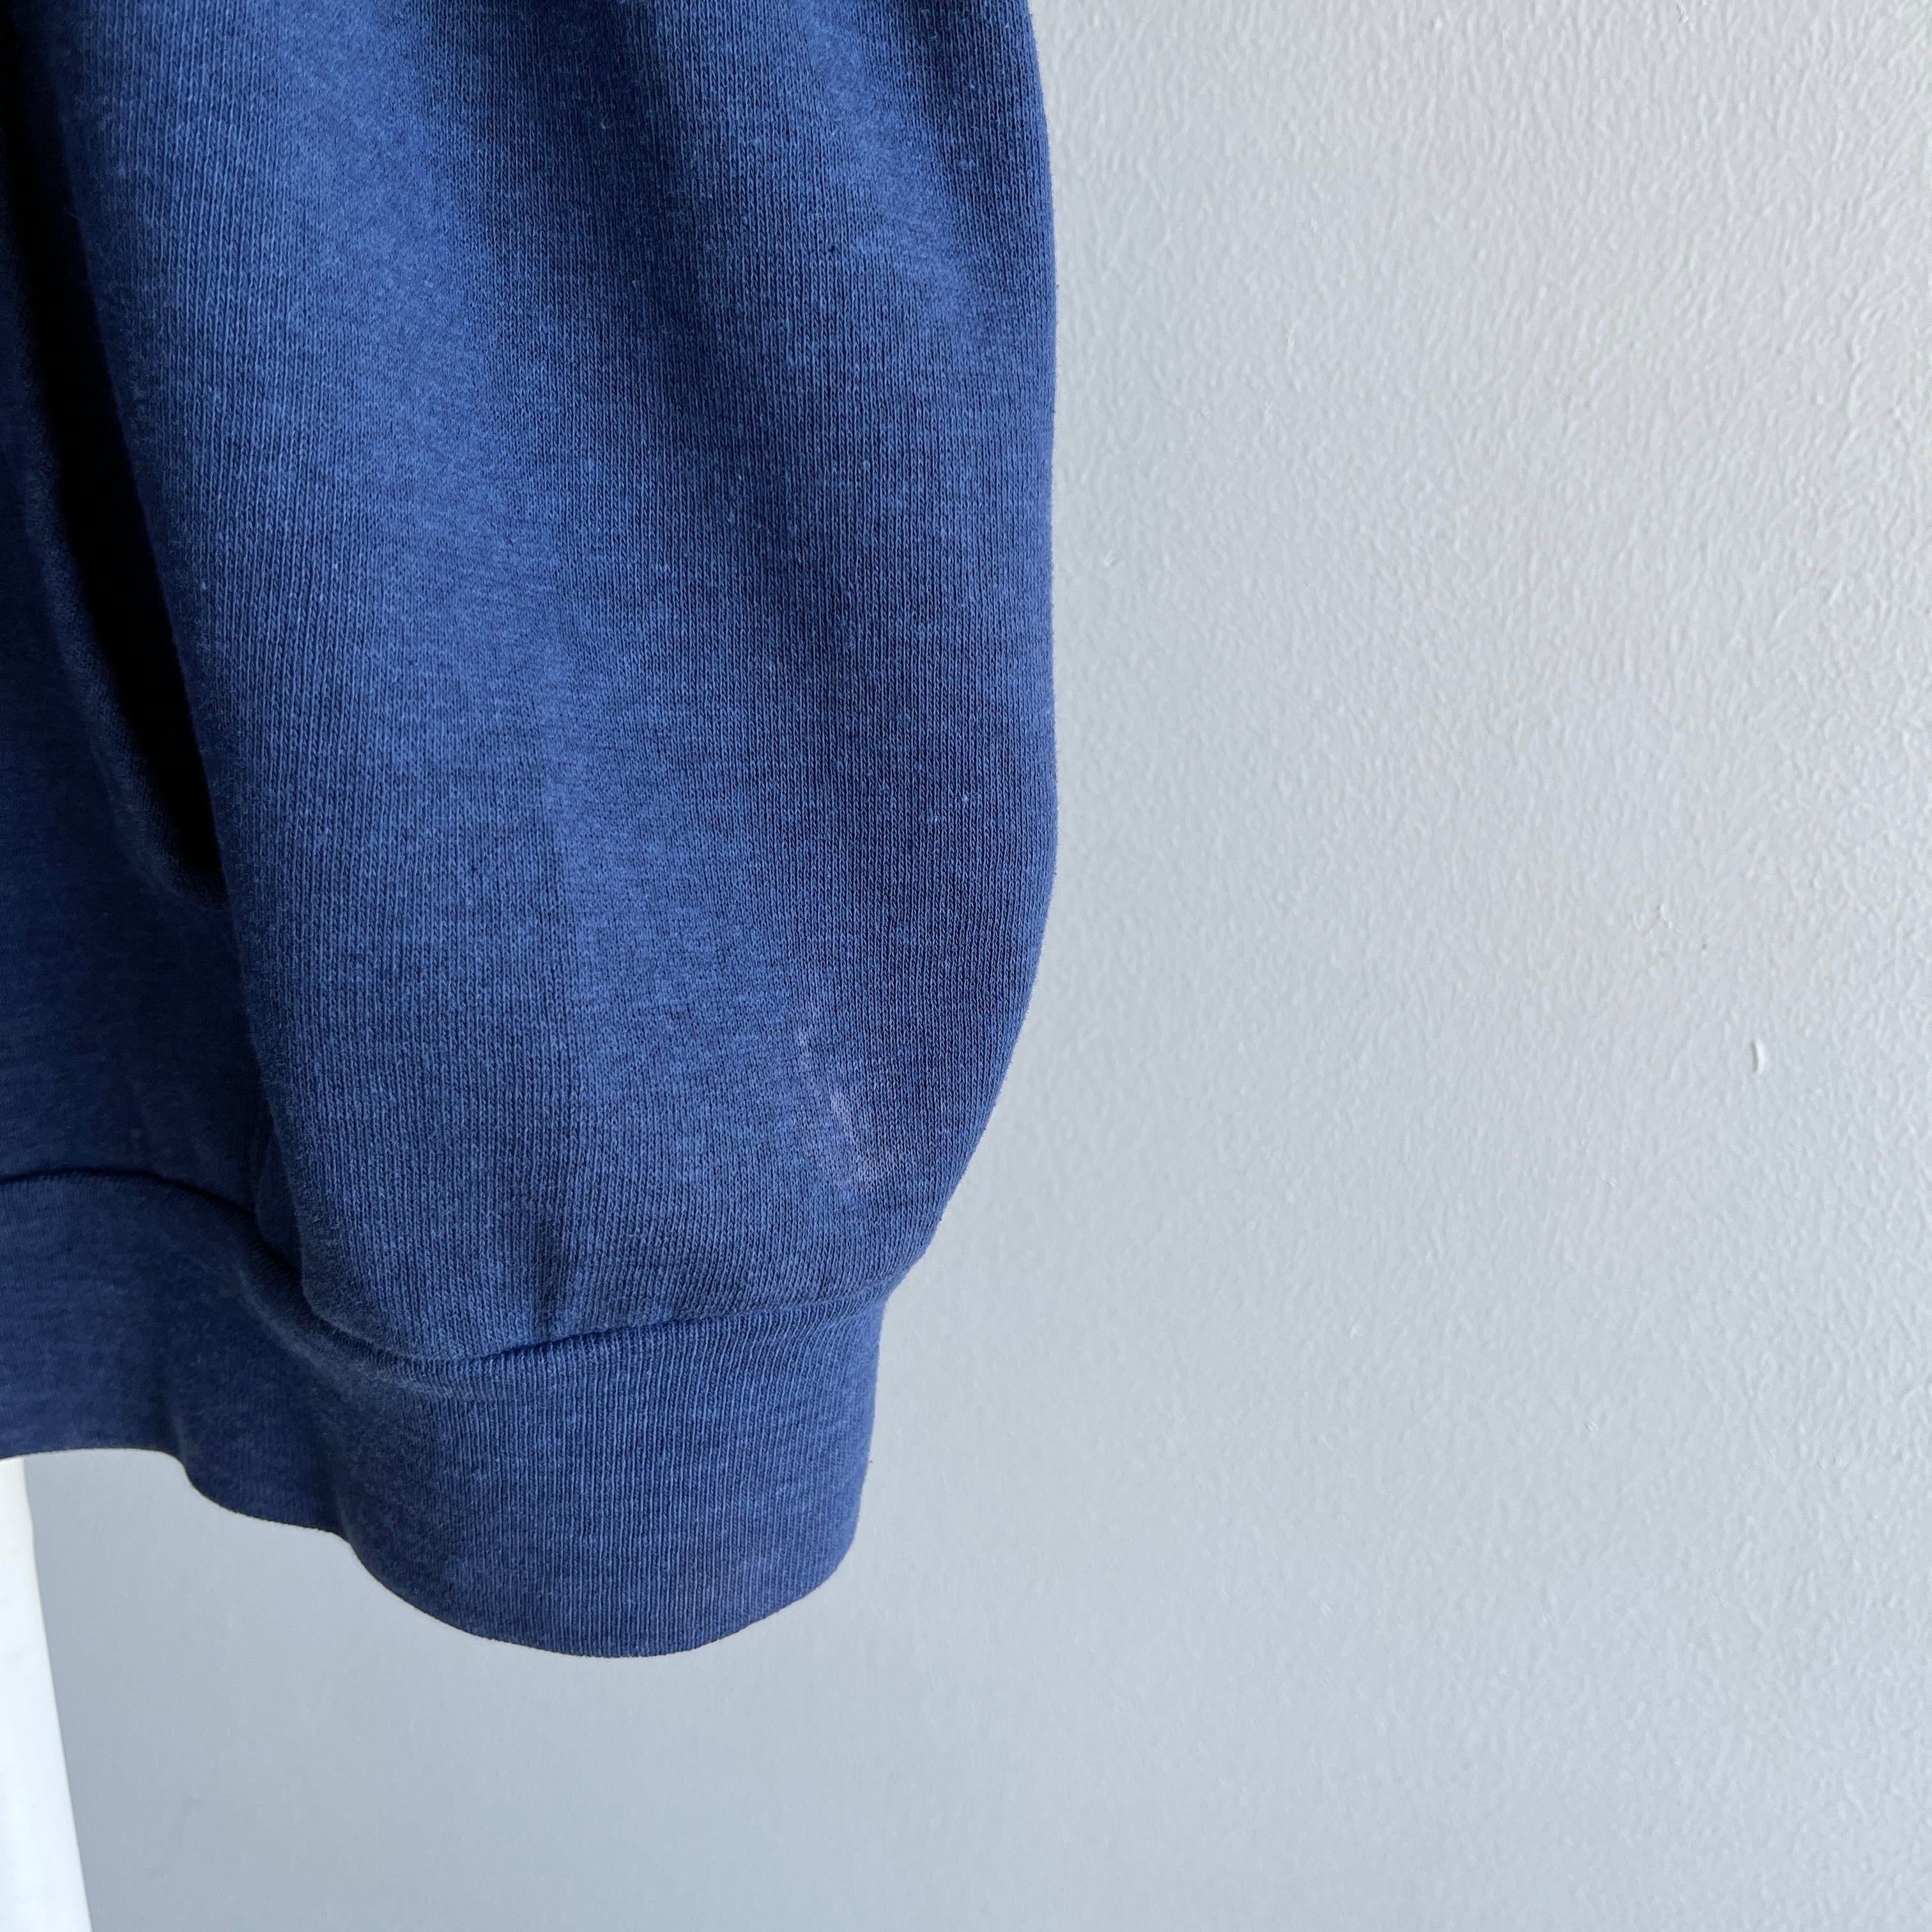 1980s Selvedge Pouch Healthknit Navy Zip Up Sweatshirt - YES